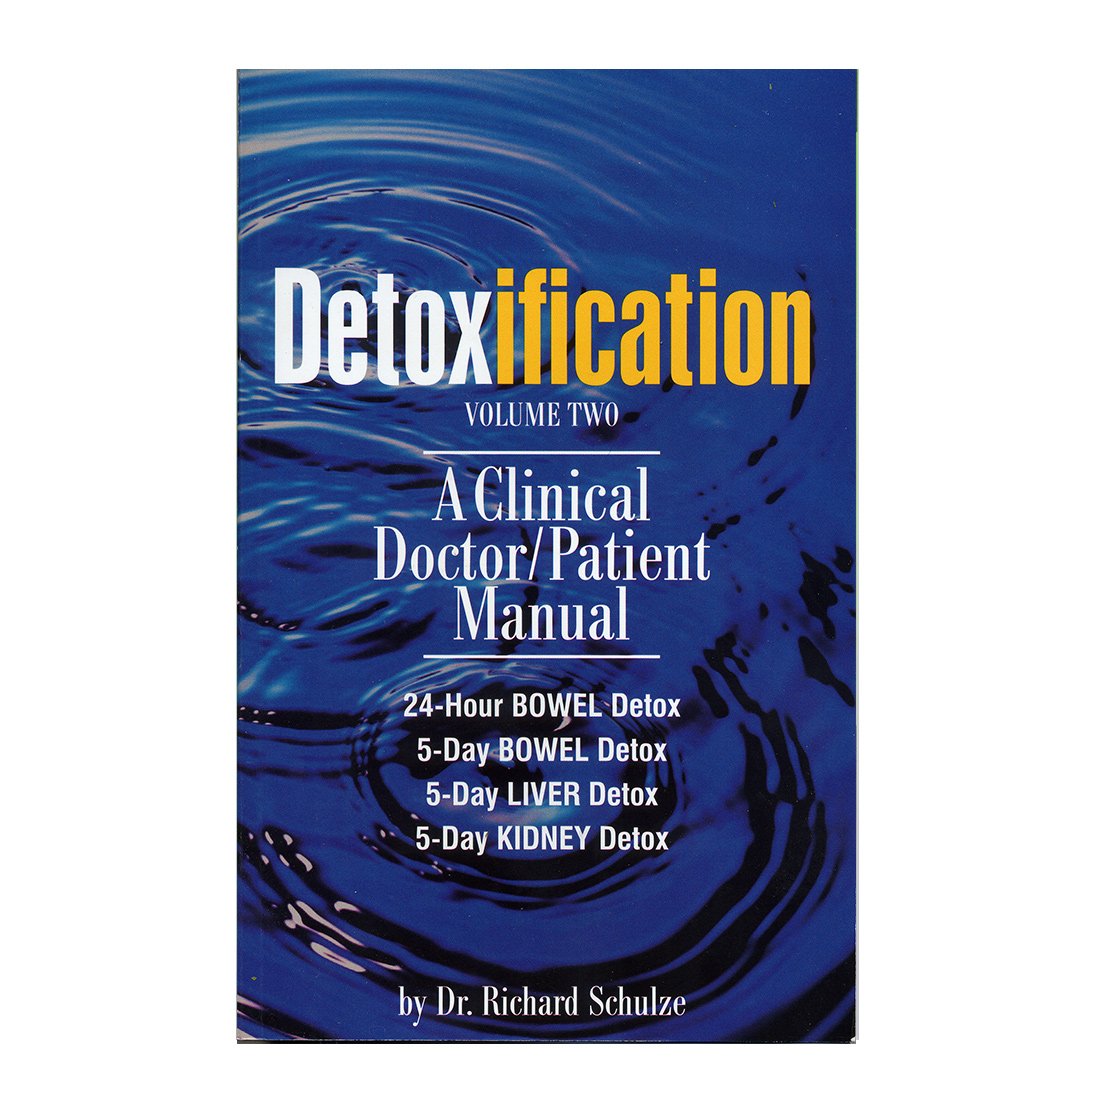 Detoxification Vol. 2